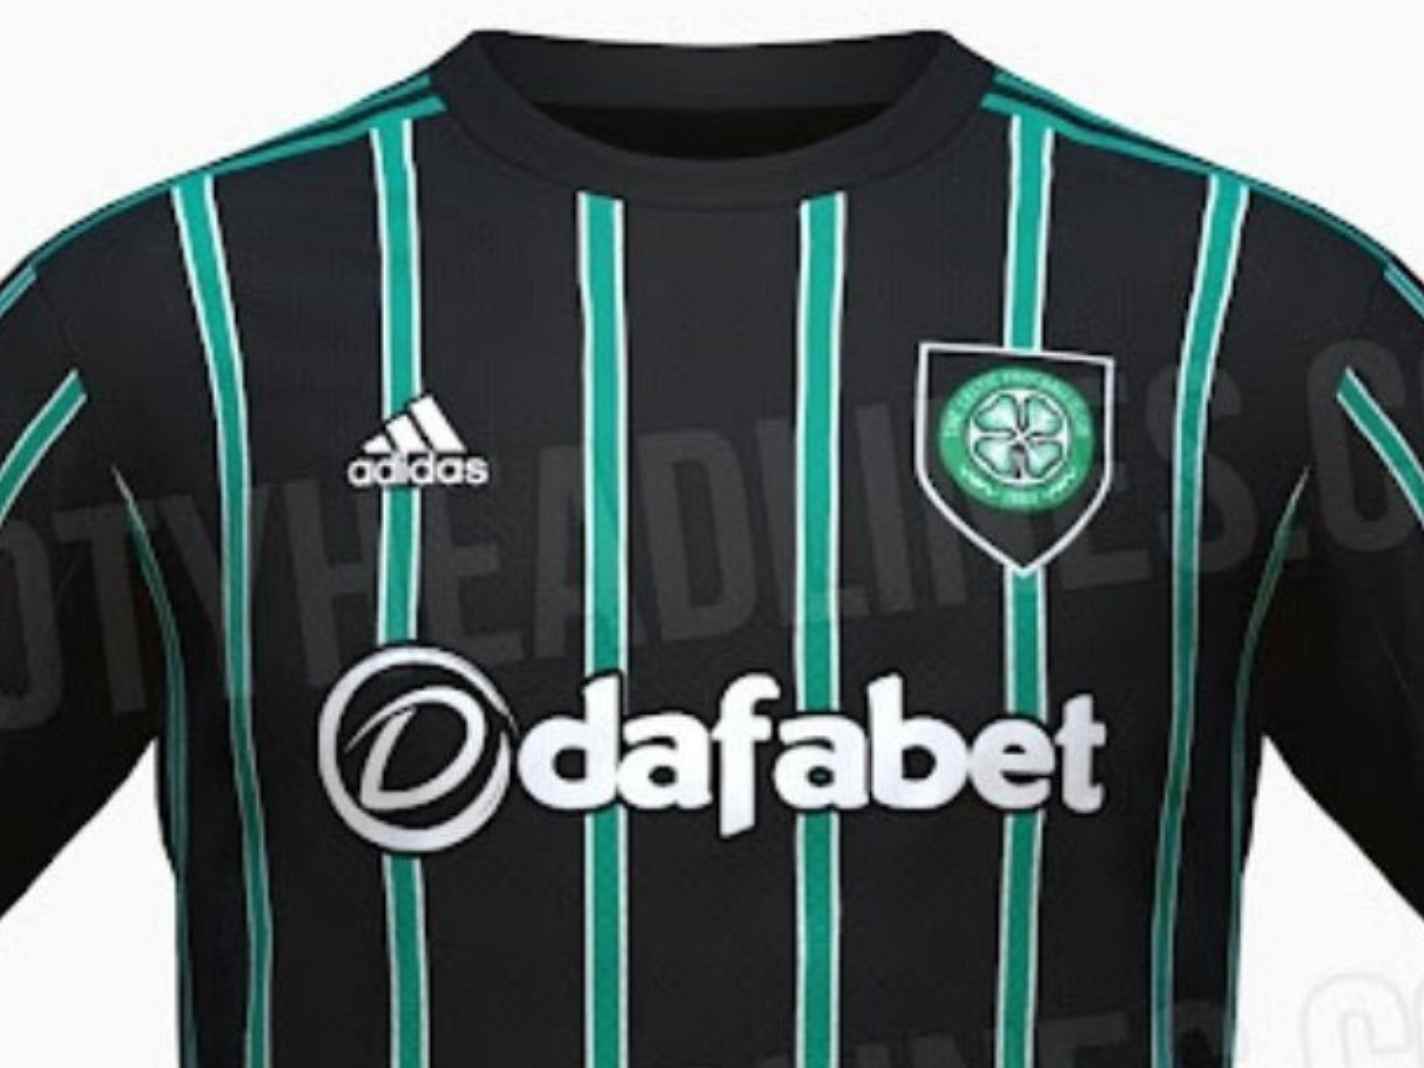 Celtic away kit for 22/23 season throws back to their Umbro days